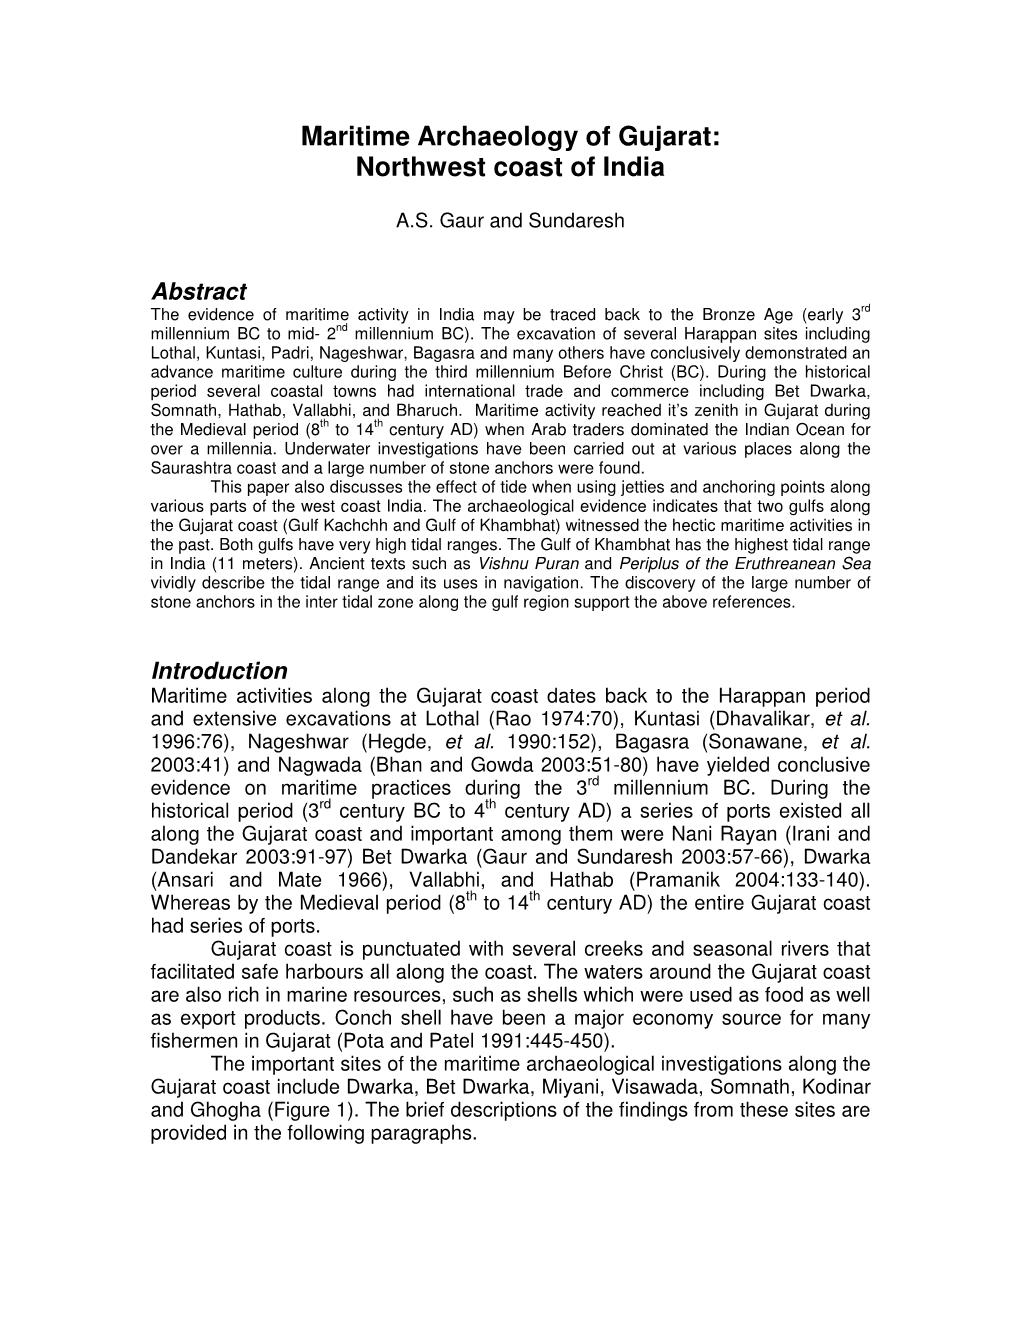 Maritime Archaeology of Gujarat: Northwest Coast of India